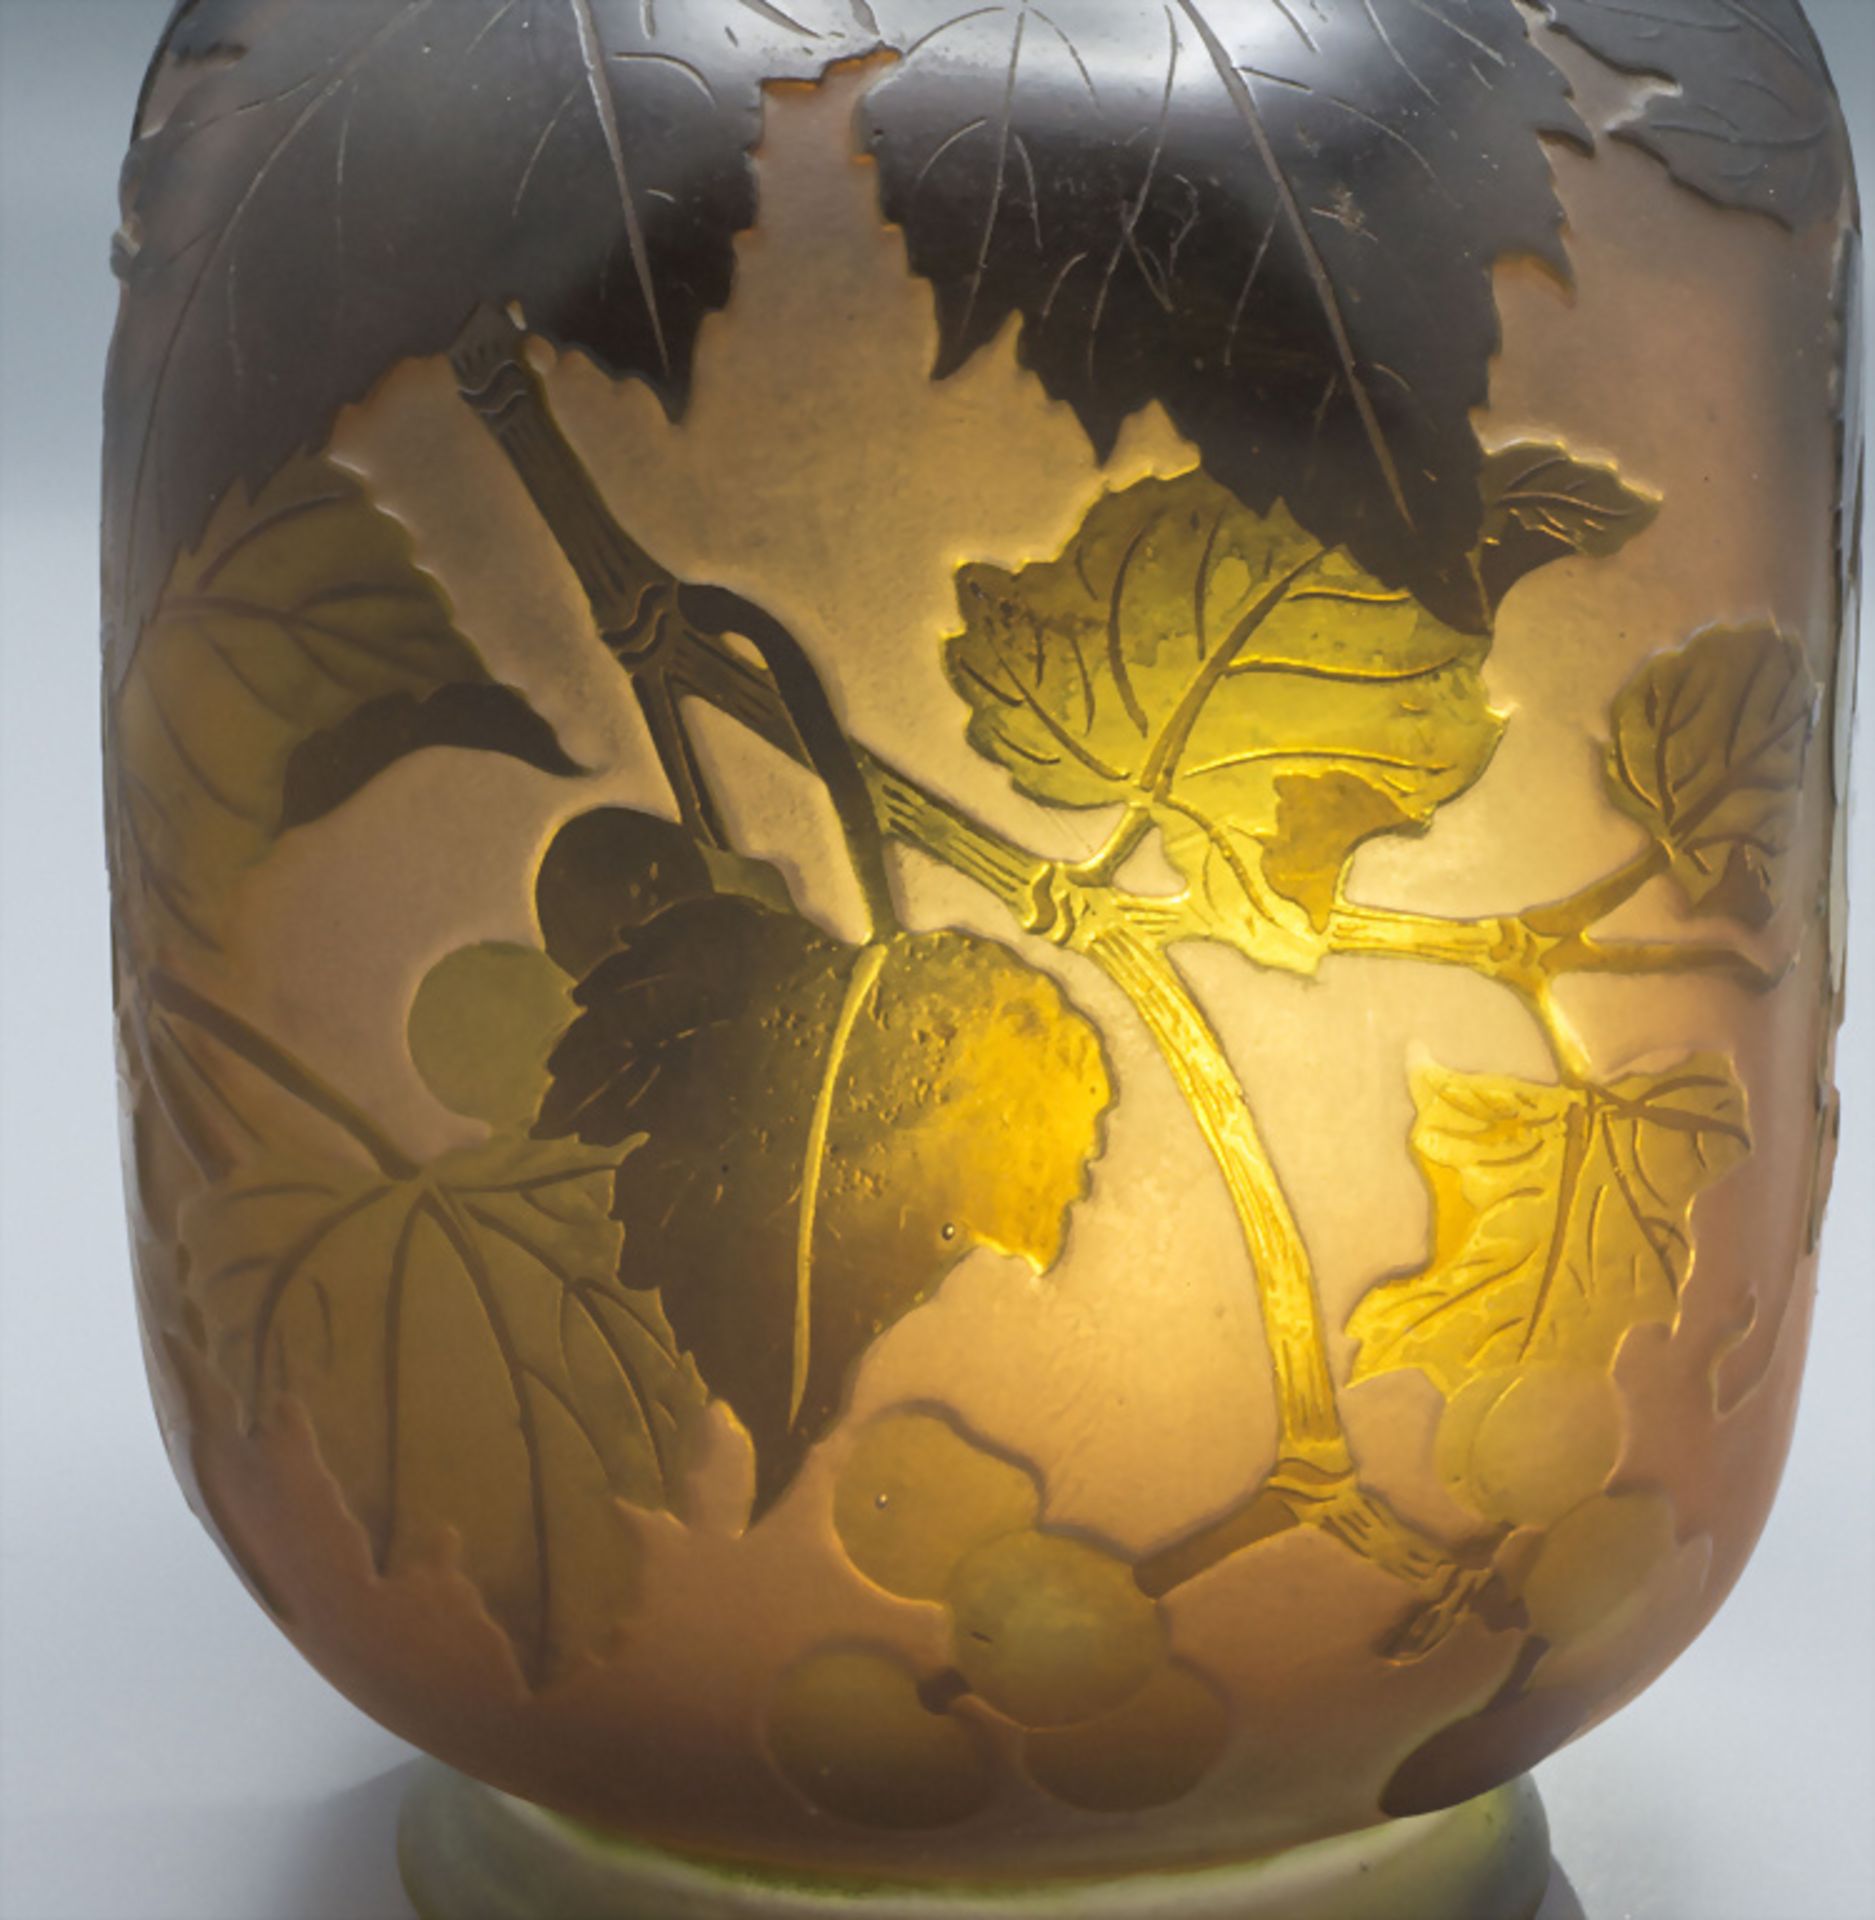 Jugendstil Vierkantvase mit Weinranken / An Art Nouveau square cameo glass vase with vine ... - Bild 7 aus 7